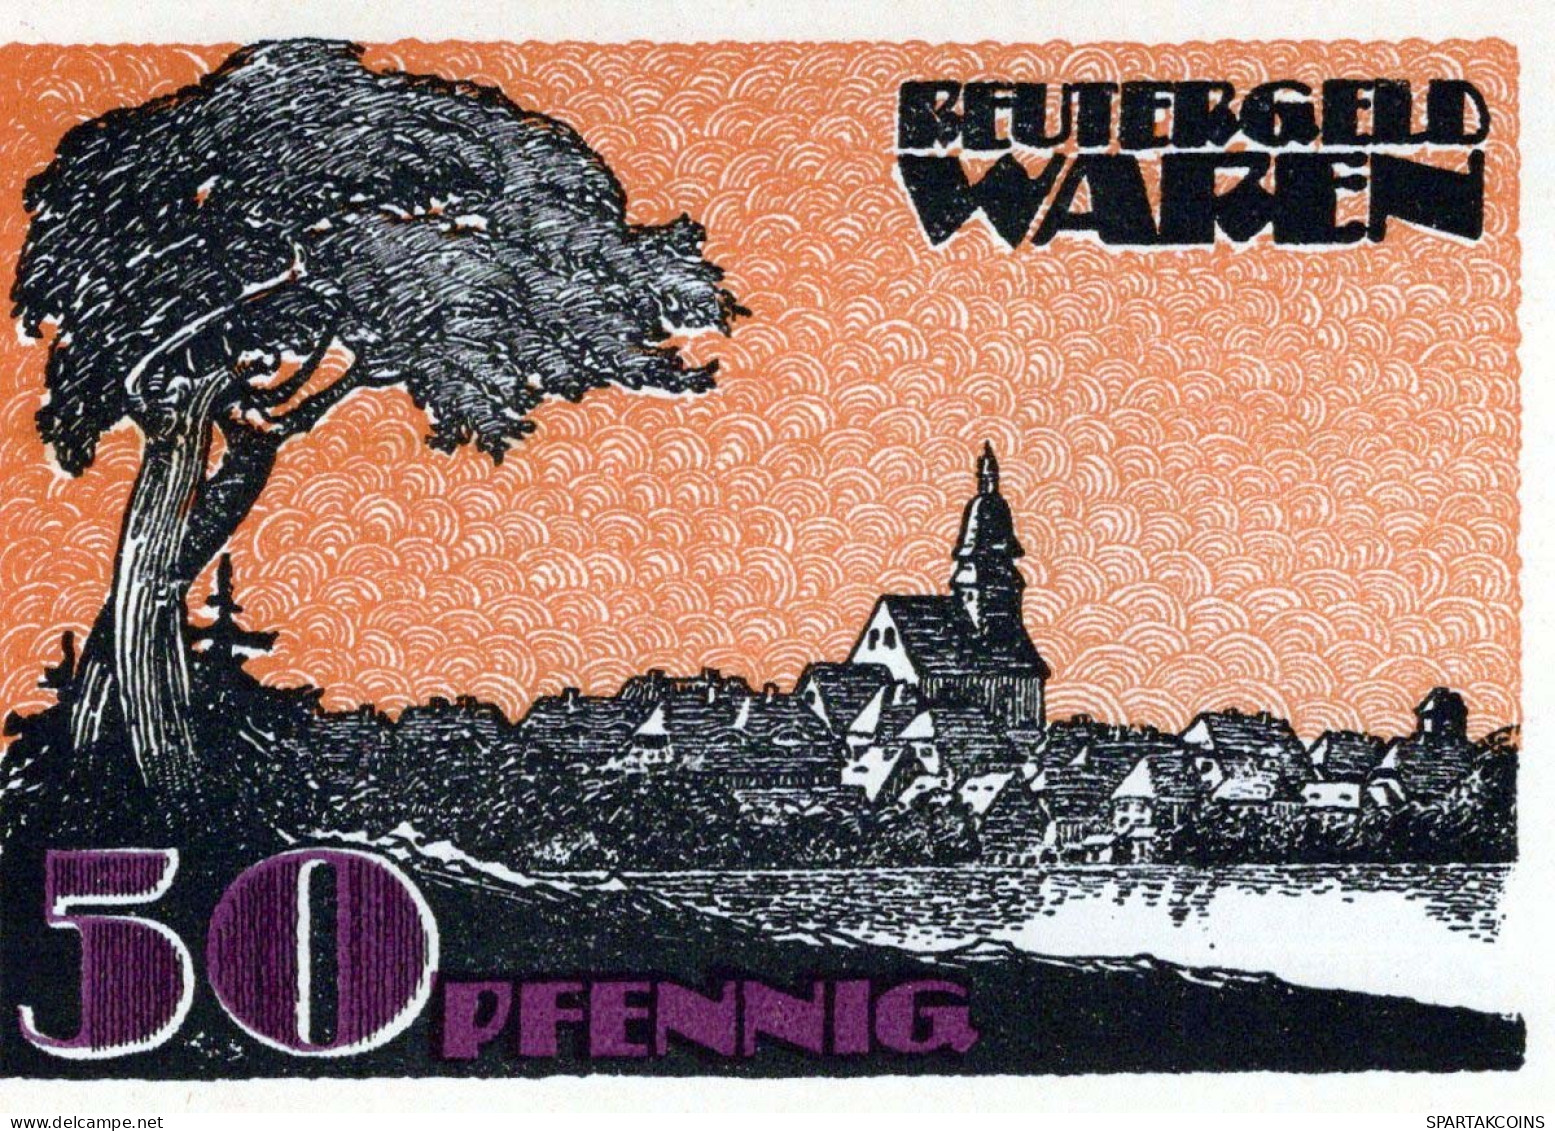 50 PFENNIG 1921 Stadt WAREN Mecklenburg-Schwerin UNC DEUTSCHLAND Notgeld #PI574 - [11] Local Banknote Issues